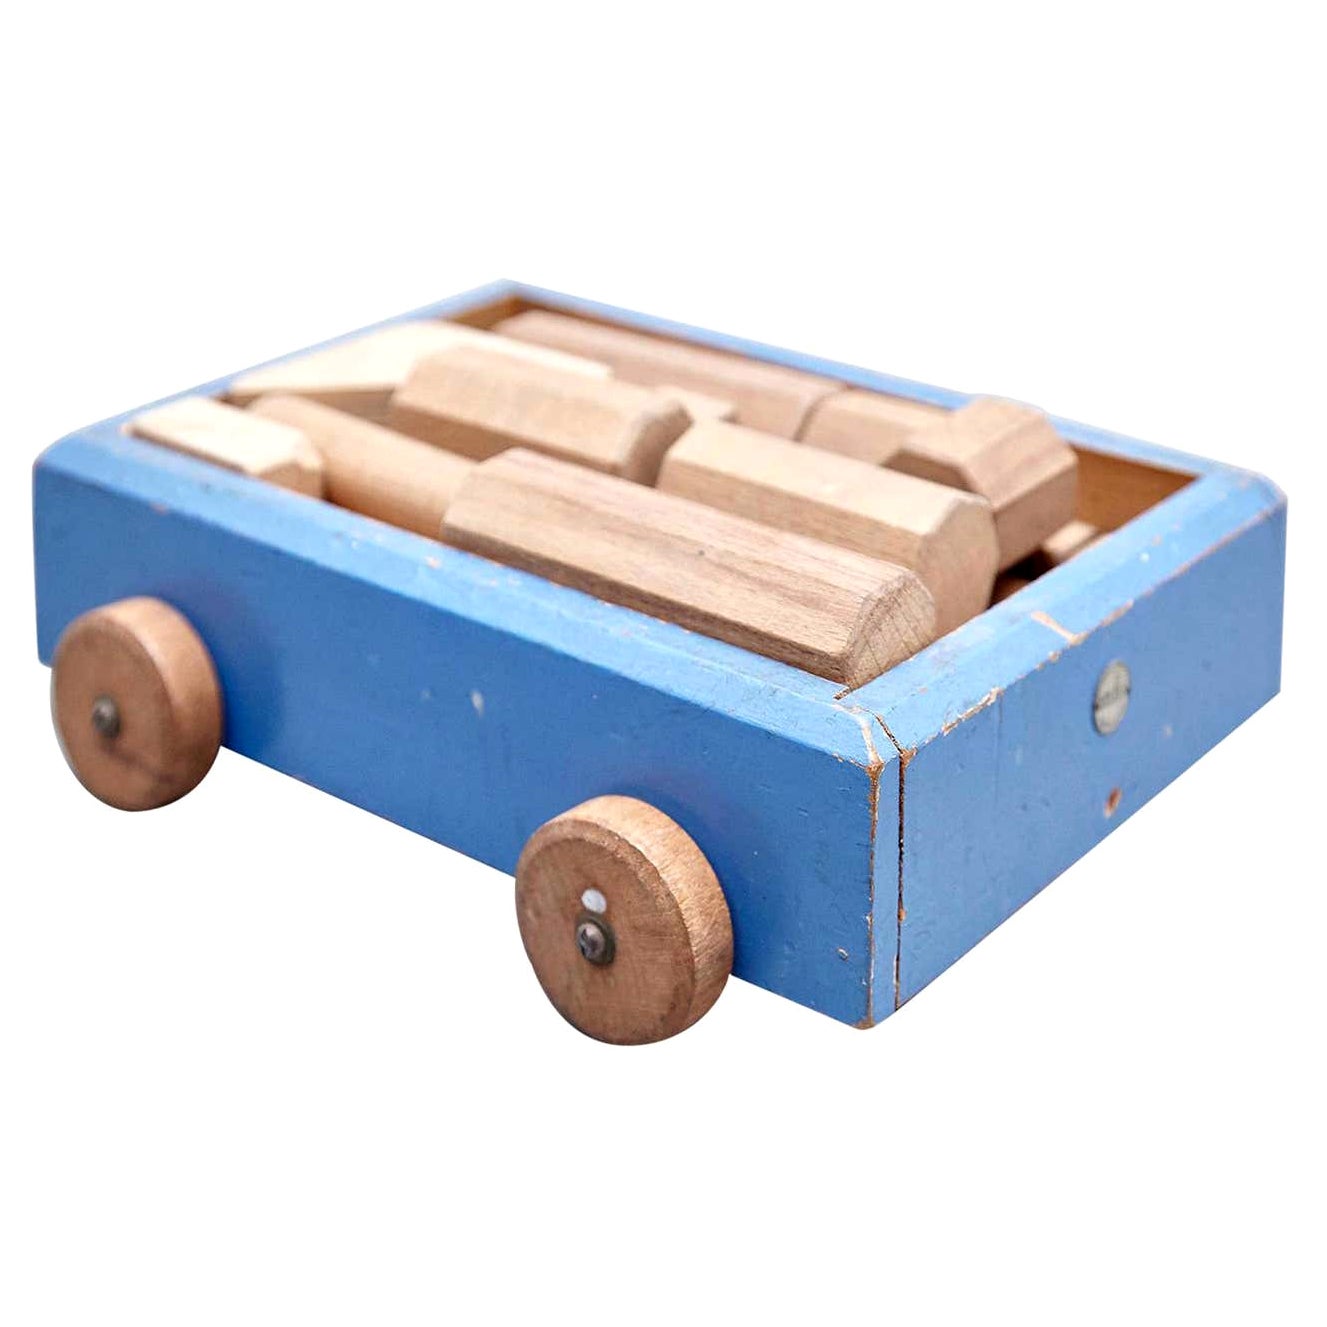 Ko Verzuu per Ado, costruzione di auto in legno moderna di metà secolo, giocattolo olandese